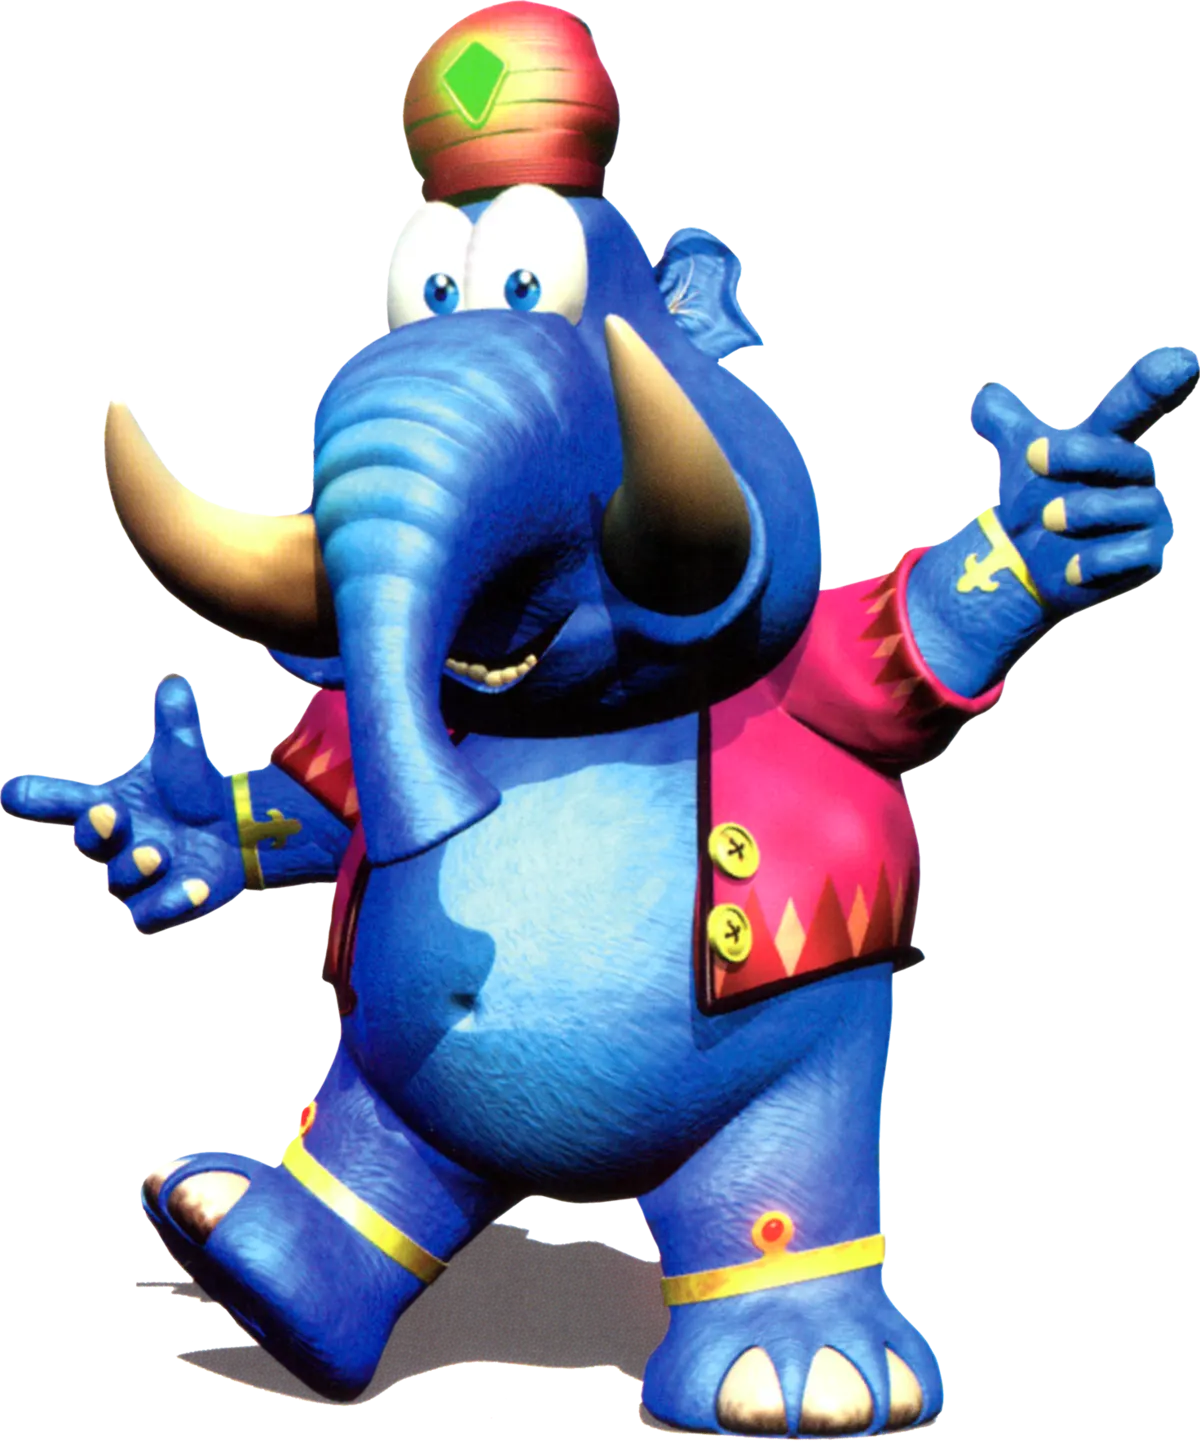 Diddy Kong Racing - Taj the Genie.